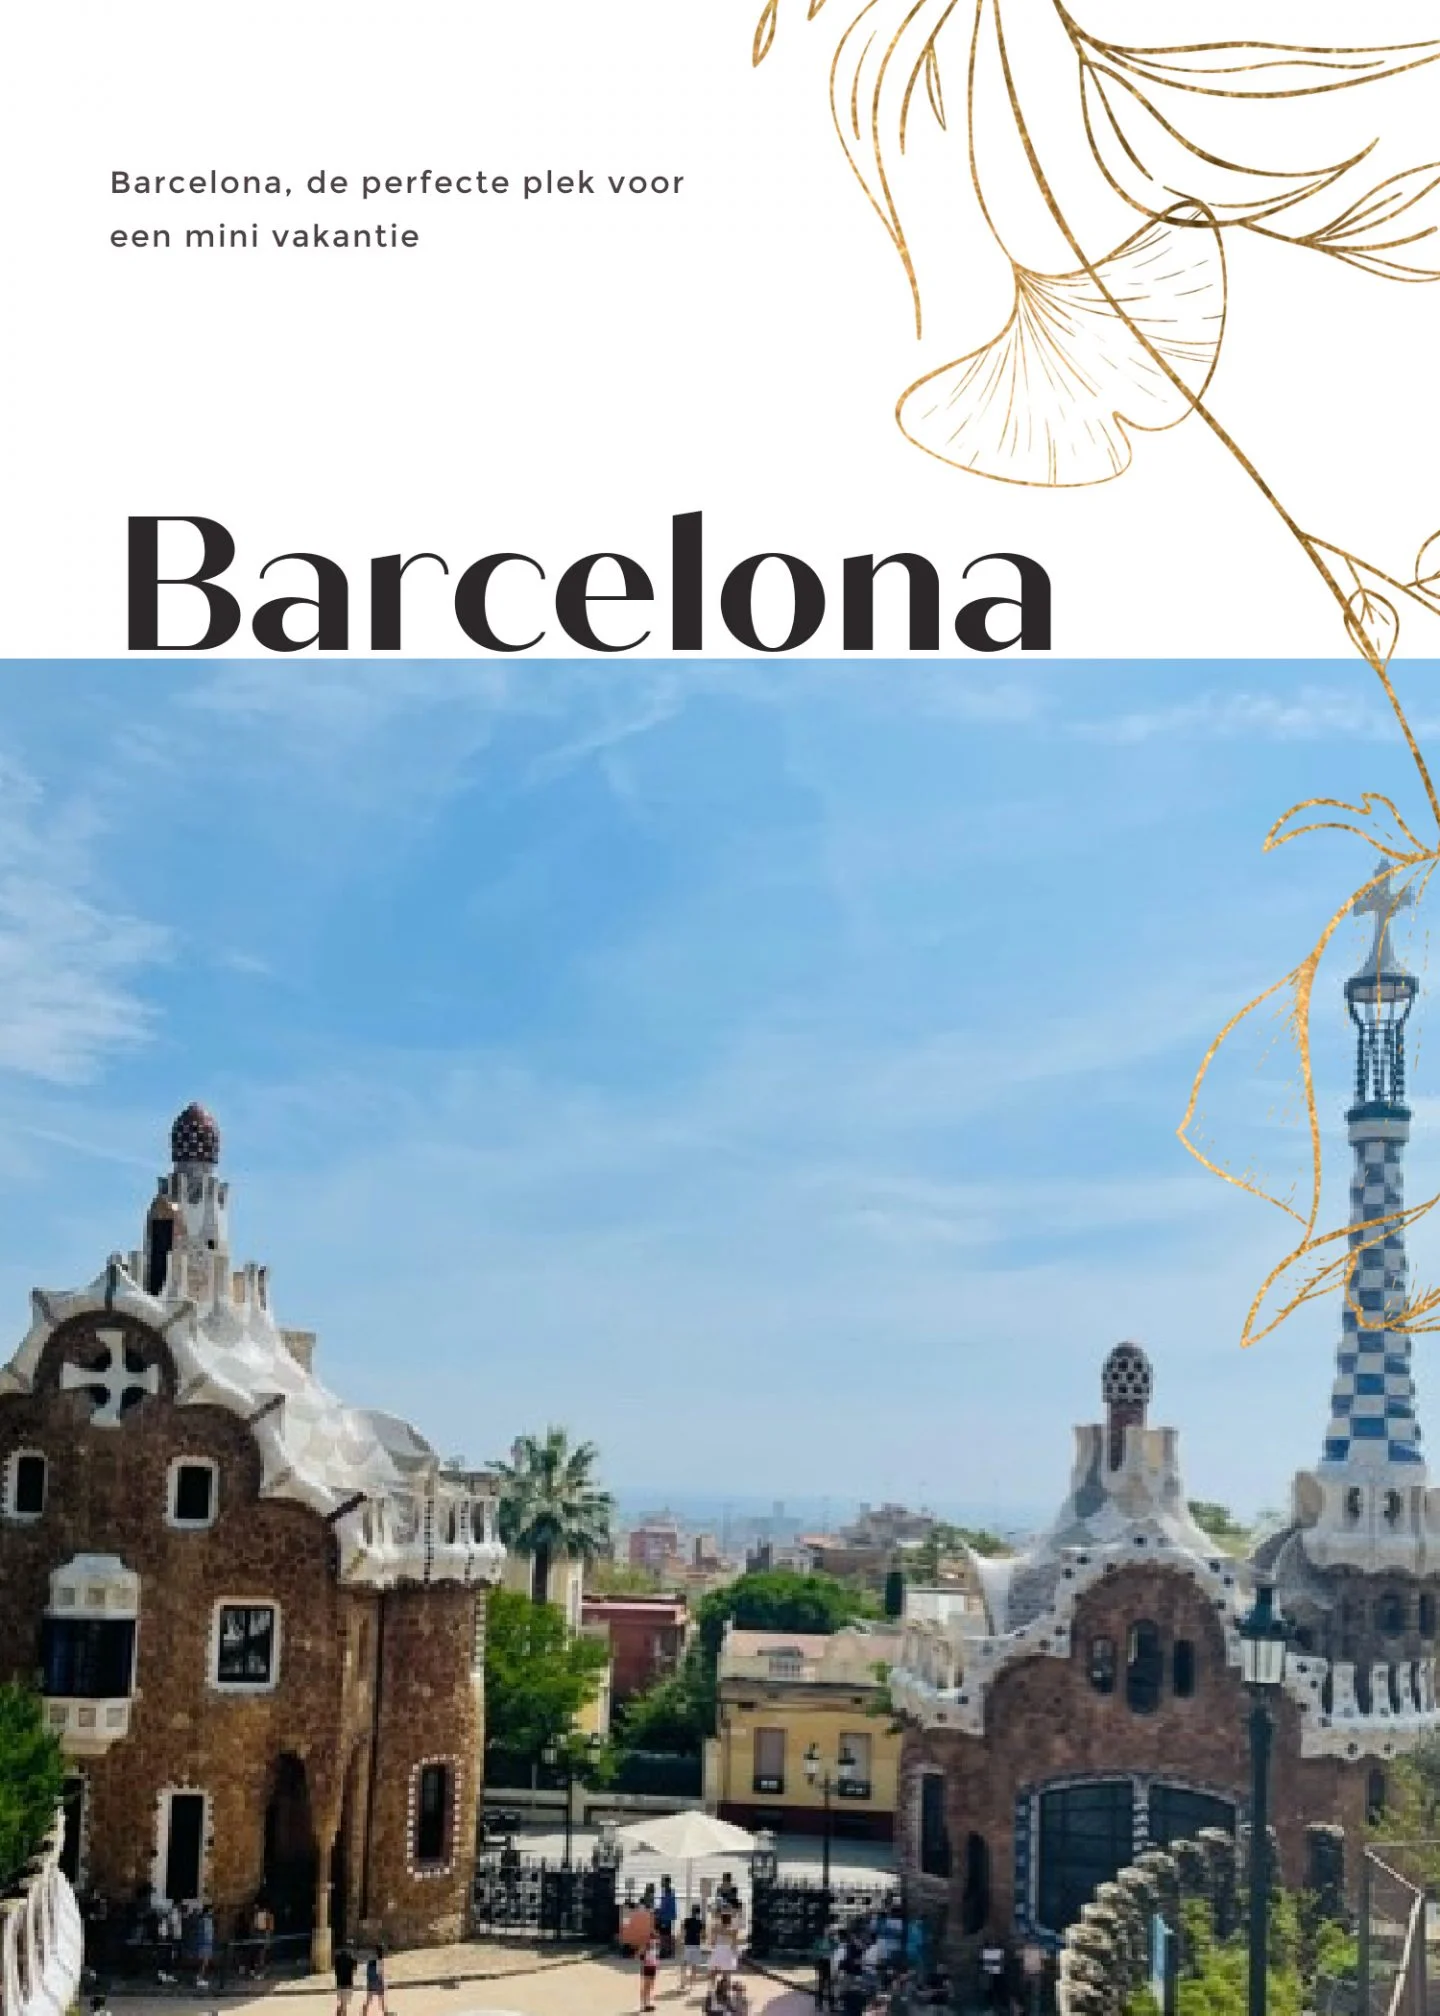 Barcelona, de perfecte plek voor een mini vakantie